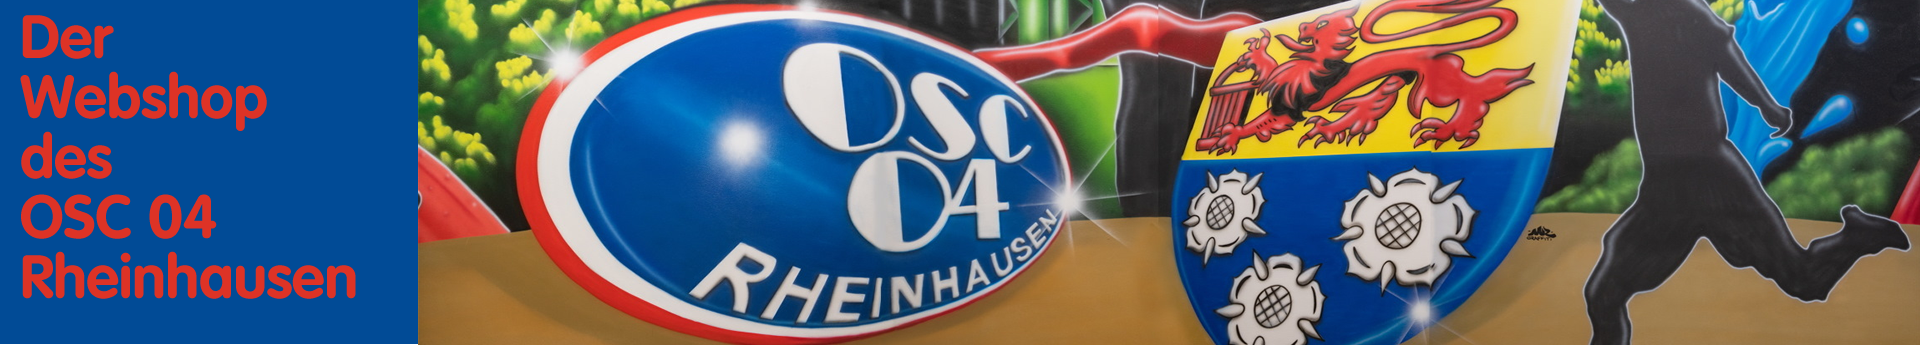 OSC Rheinhausen Title Image